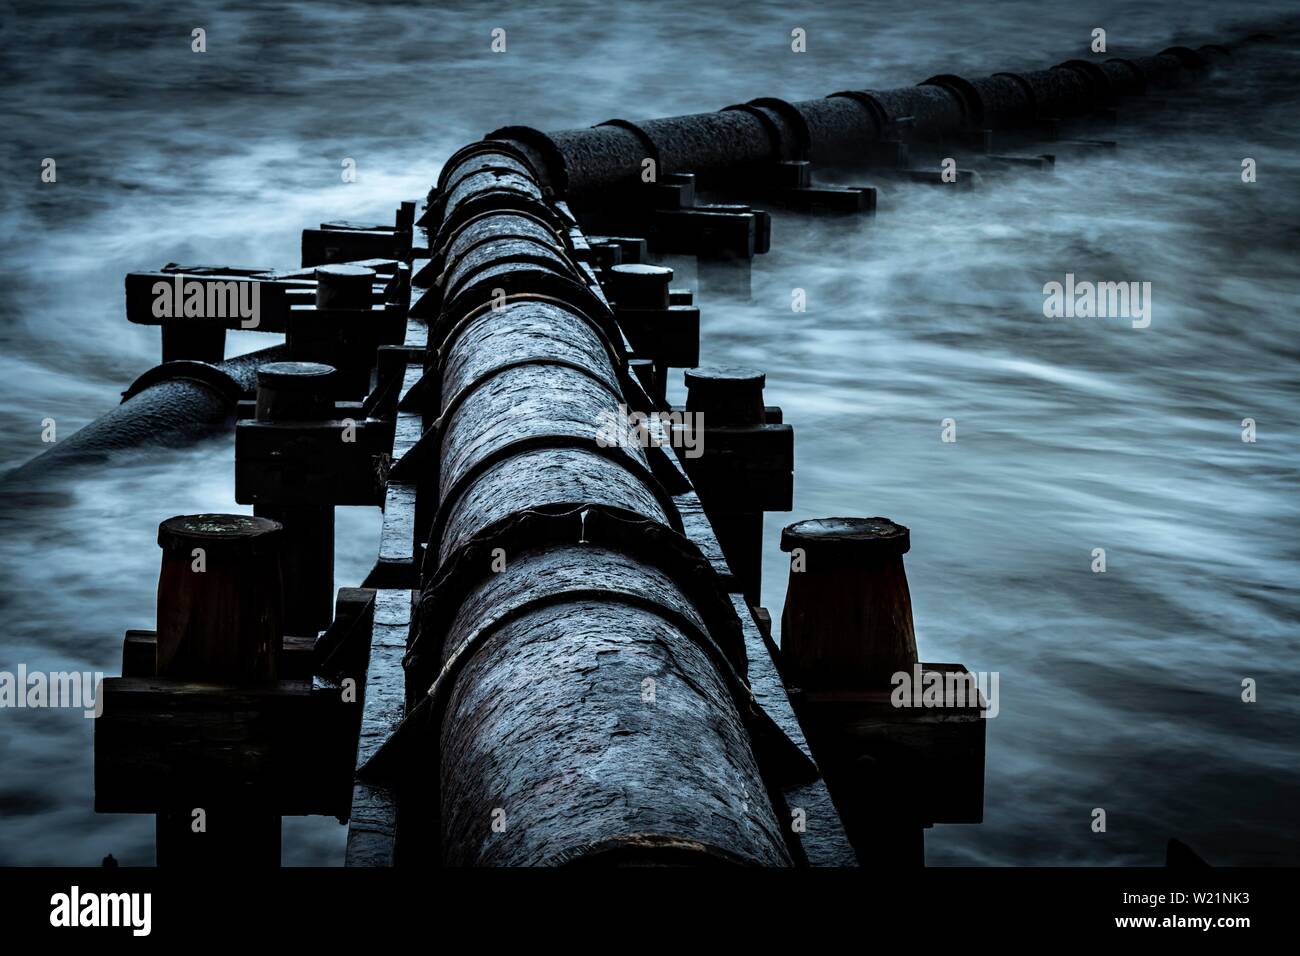 Tubo de hierro oxidadas, tubo de aguas residuales en el mar, surf, Blyth, Northumberland, Gran Bretaña Foto de stock